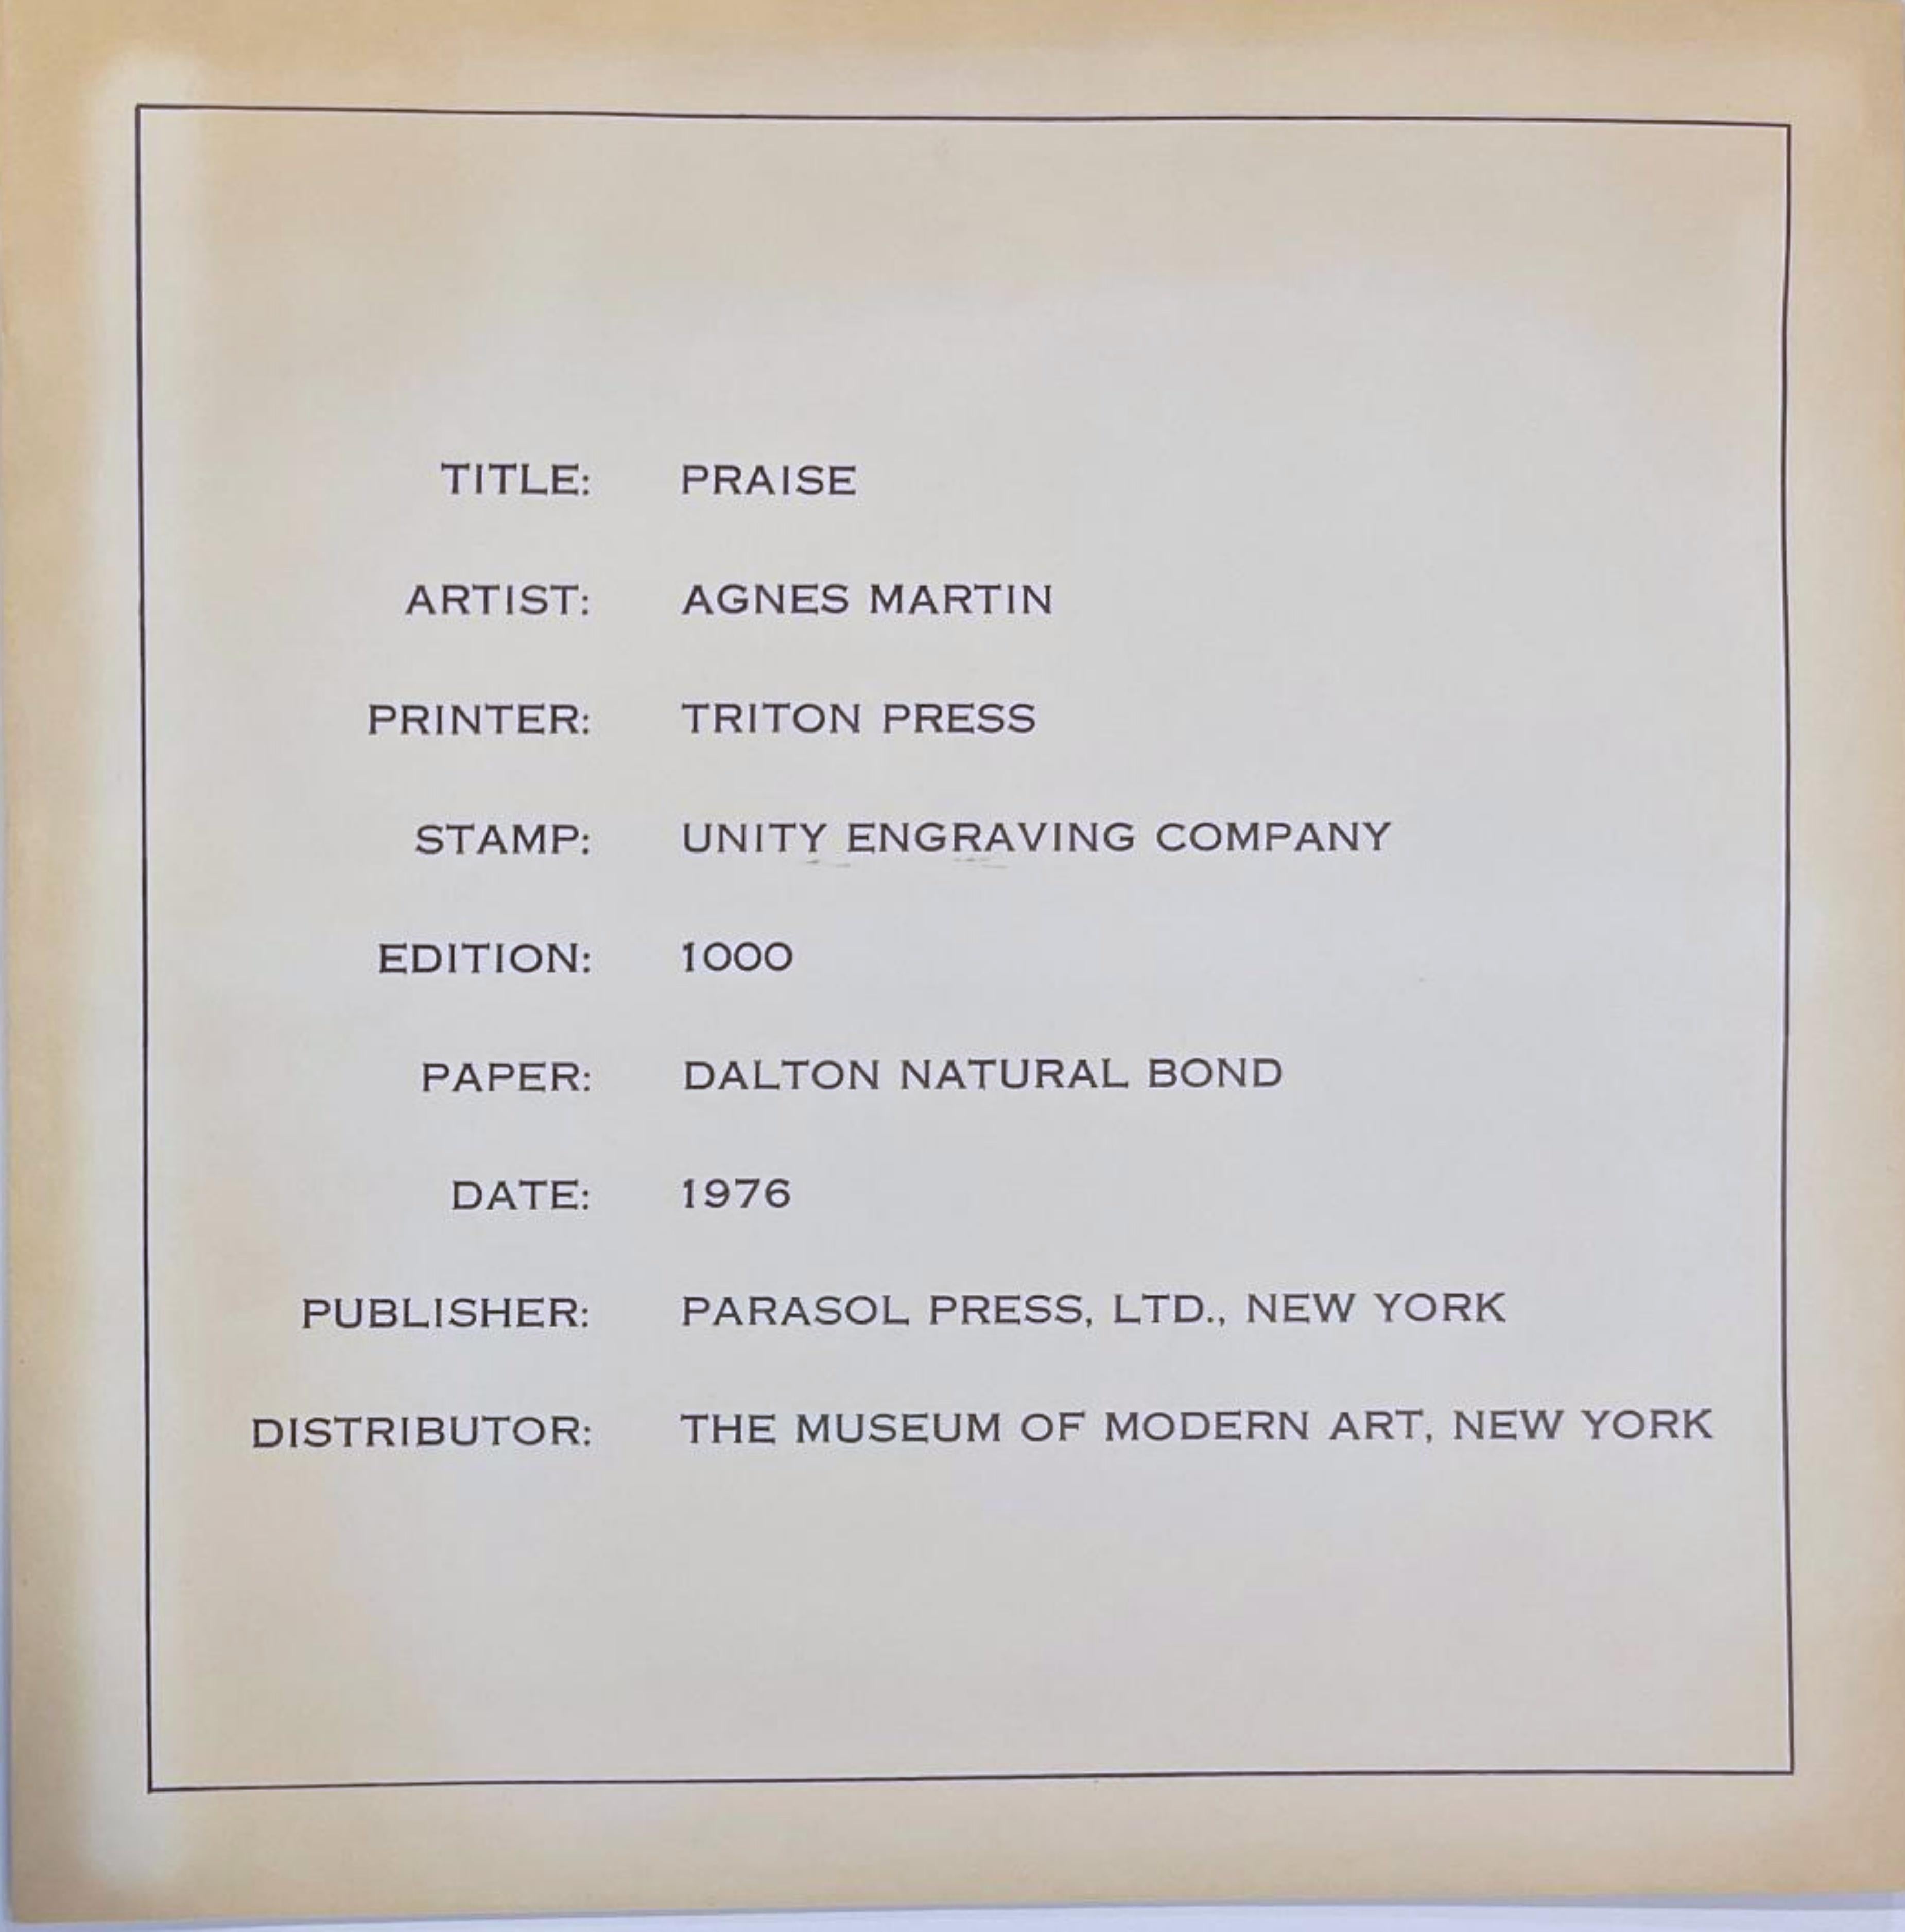 AGNES MARTIN
Louanges, 1976
Lithographie sur papier Dalton Natural Bond. Signature dorée sur le devant
Une épreuve non numérotée, en dehors de l'édition normale de 1000 exemplaires.
Accompagné de l'enveloppe originale (voir photo)
11 × 11 pouces
Non